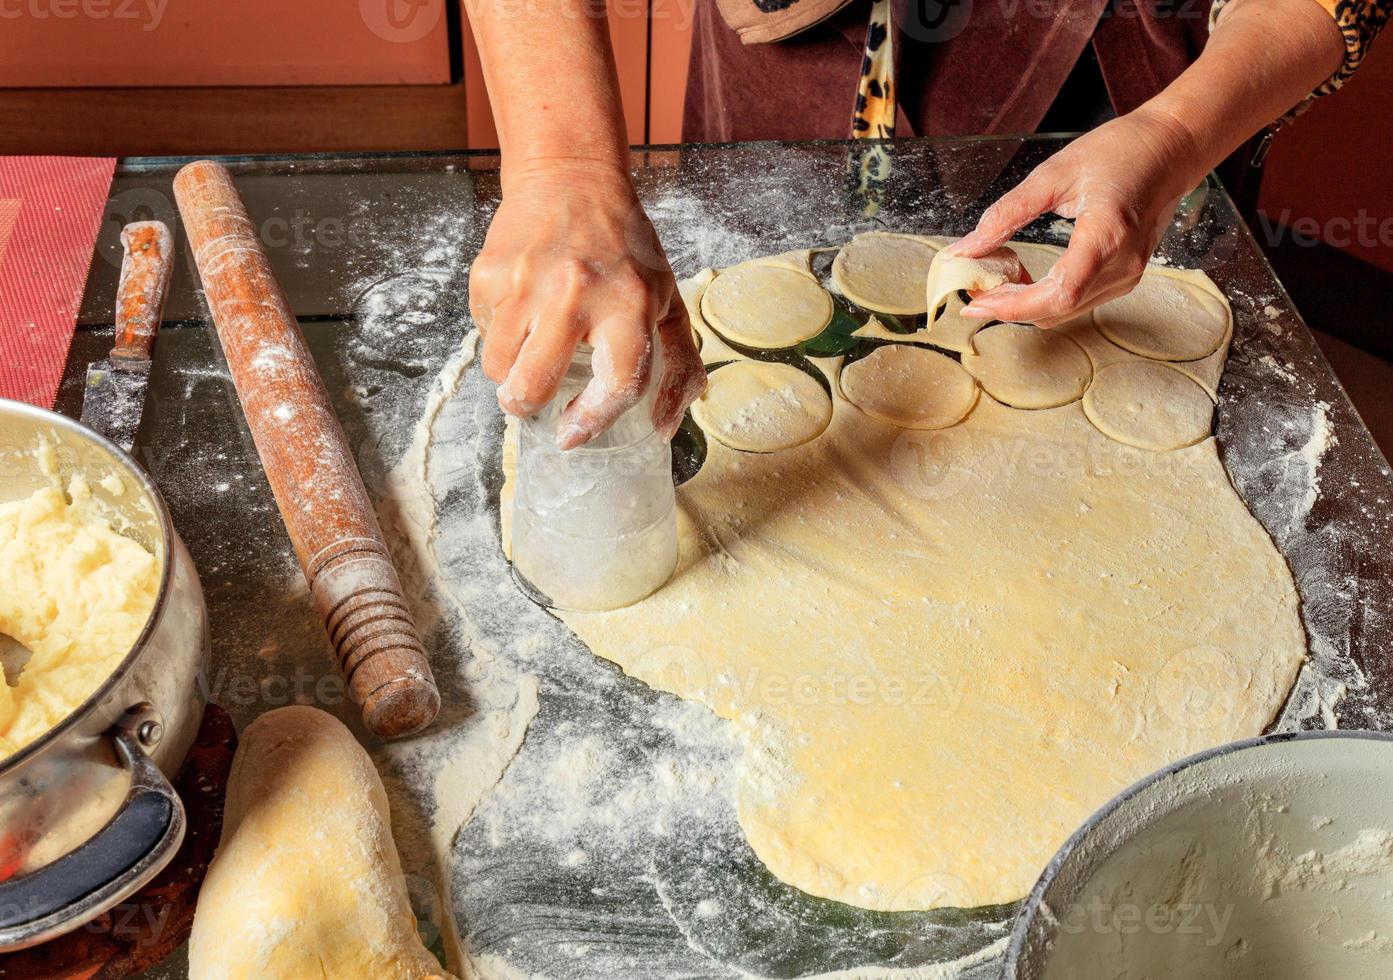 mulher molda bolinhos ucranianos. cozinha tradicional ucraniana. foto